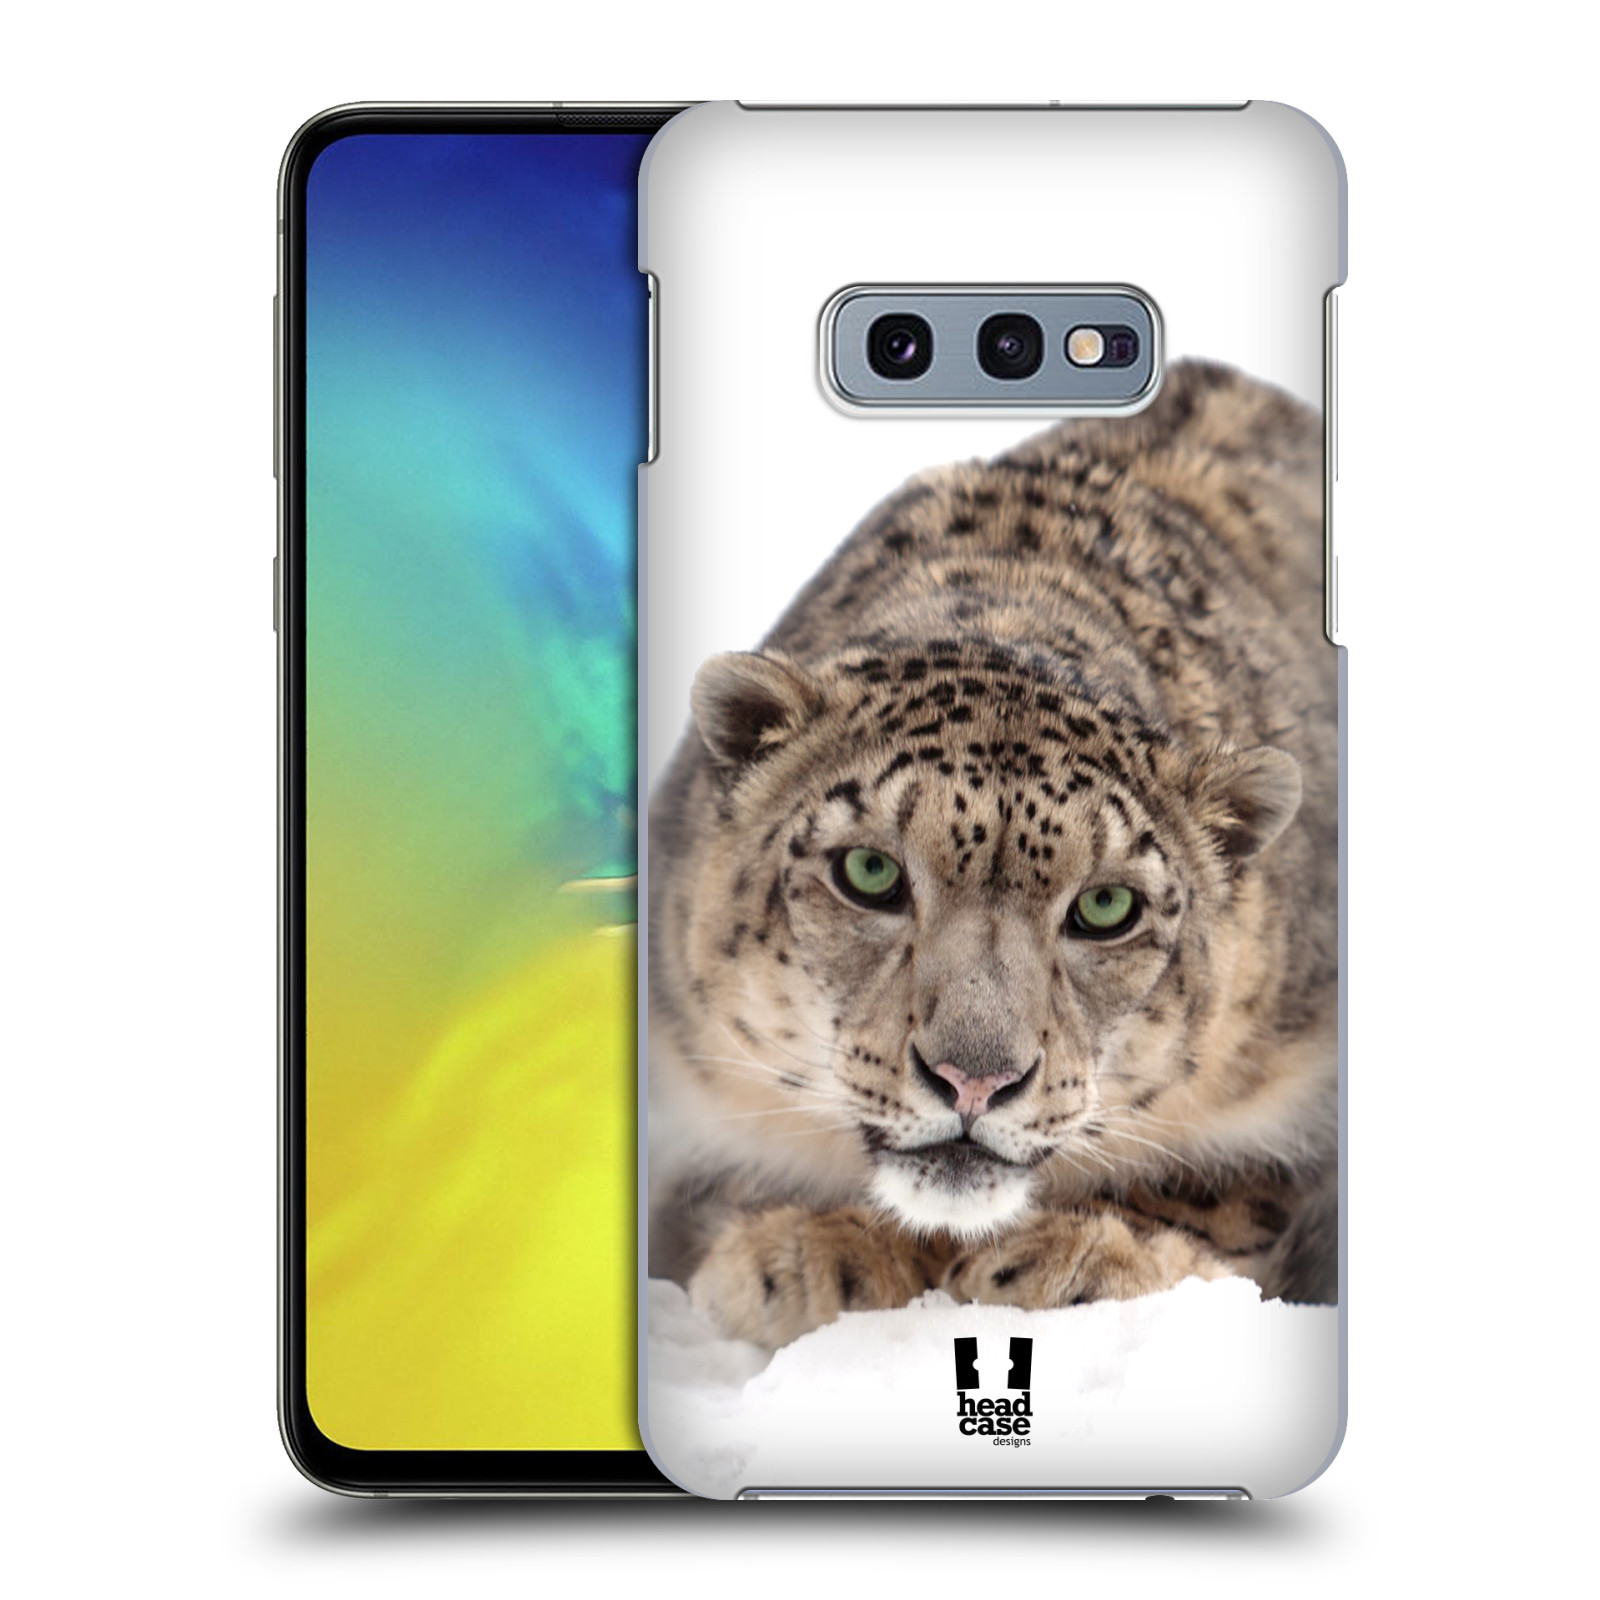 Pouzdro na mobil Samsung Galaxy S10e - HEAD CASE - vzor Divočina, Divoký život a zvířata foto SNĚŽNÝ LEOPARD